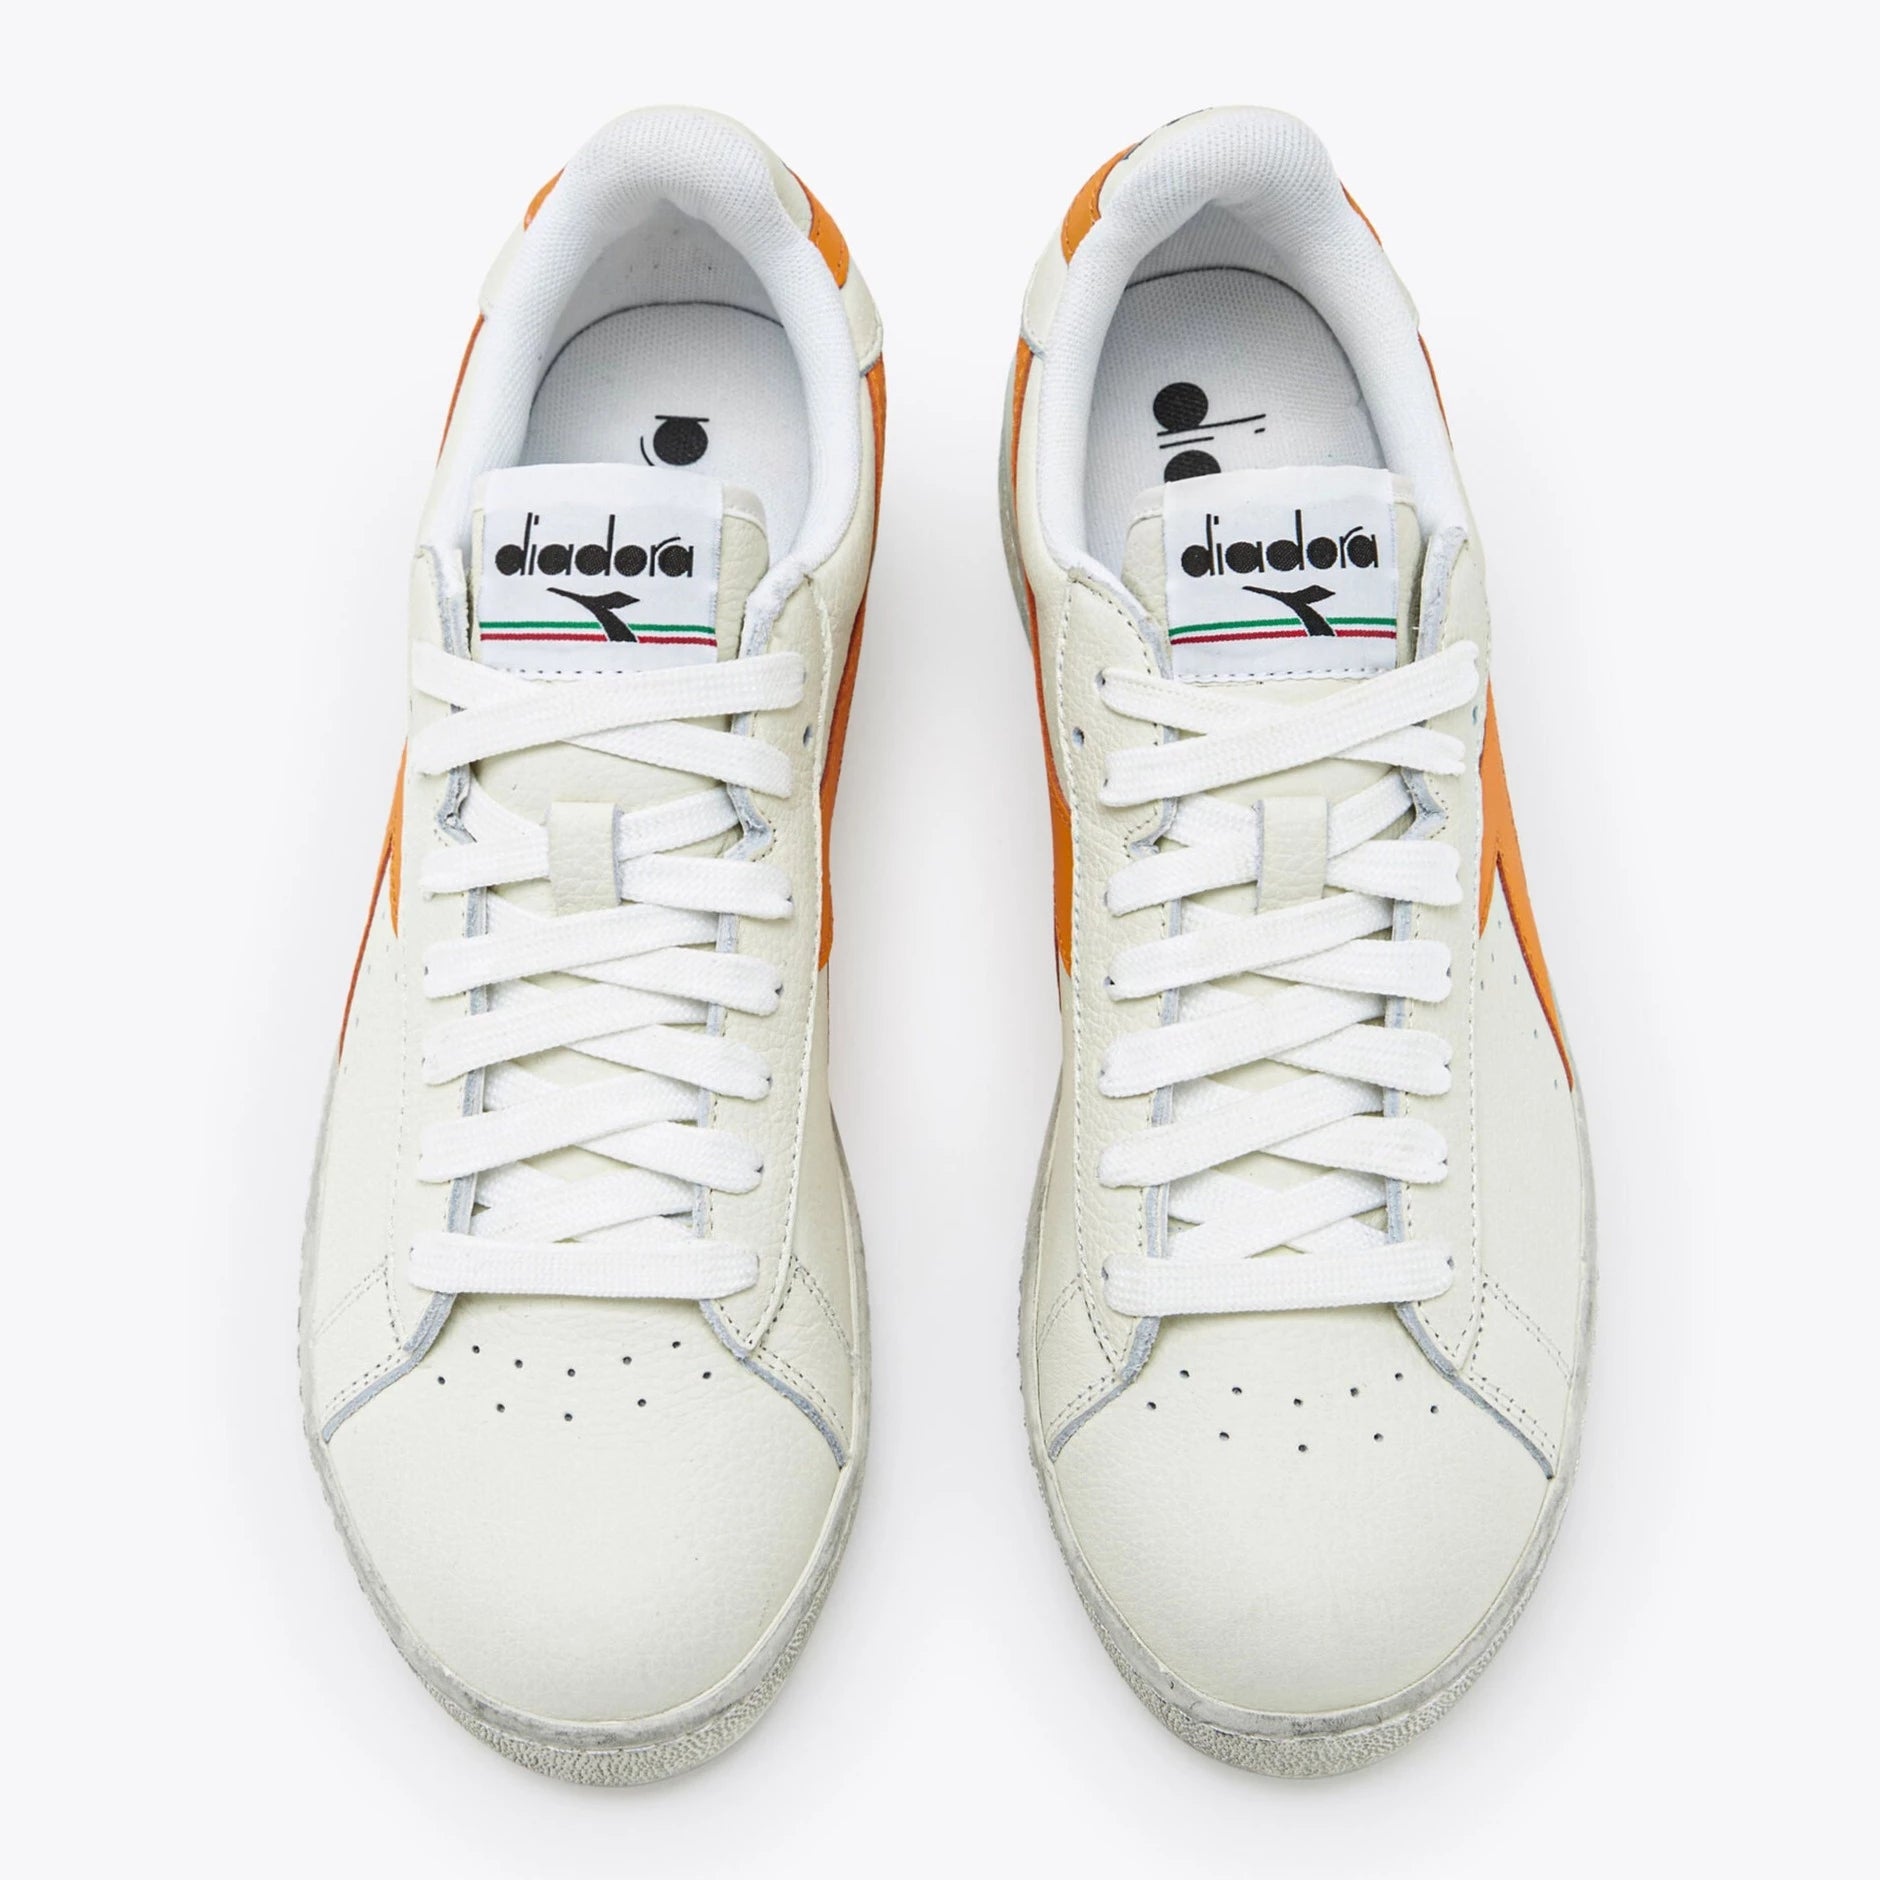 Sneakers De La Marca Diadora Para Unisex Modelo Game L Low Fluo Wax En Color Naranja